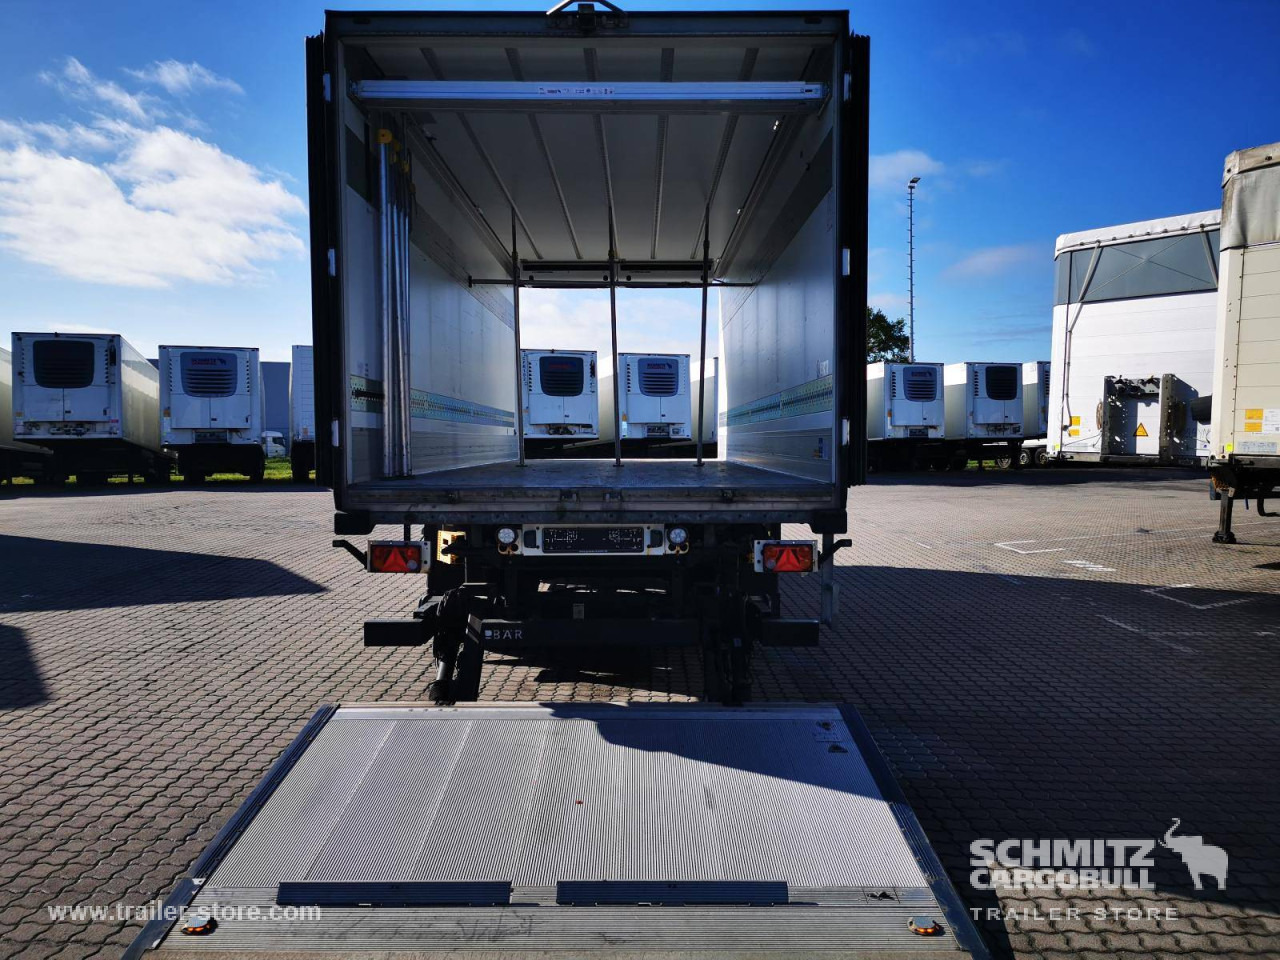 Refrigerator trailer SCHMITZ Anhänger Tiefkühler Standard Taillift: picture 10